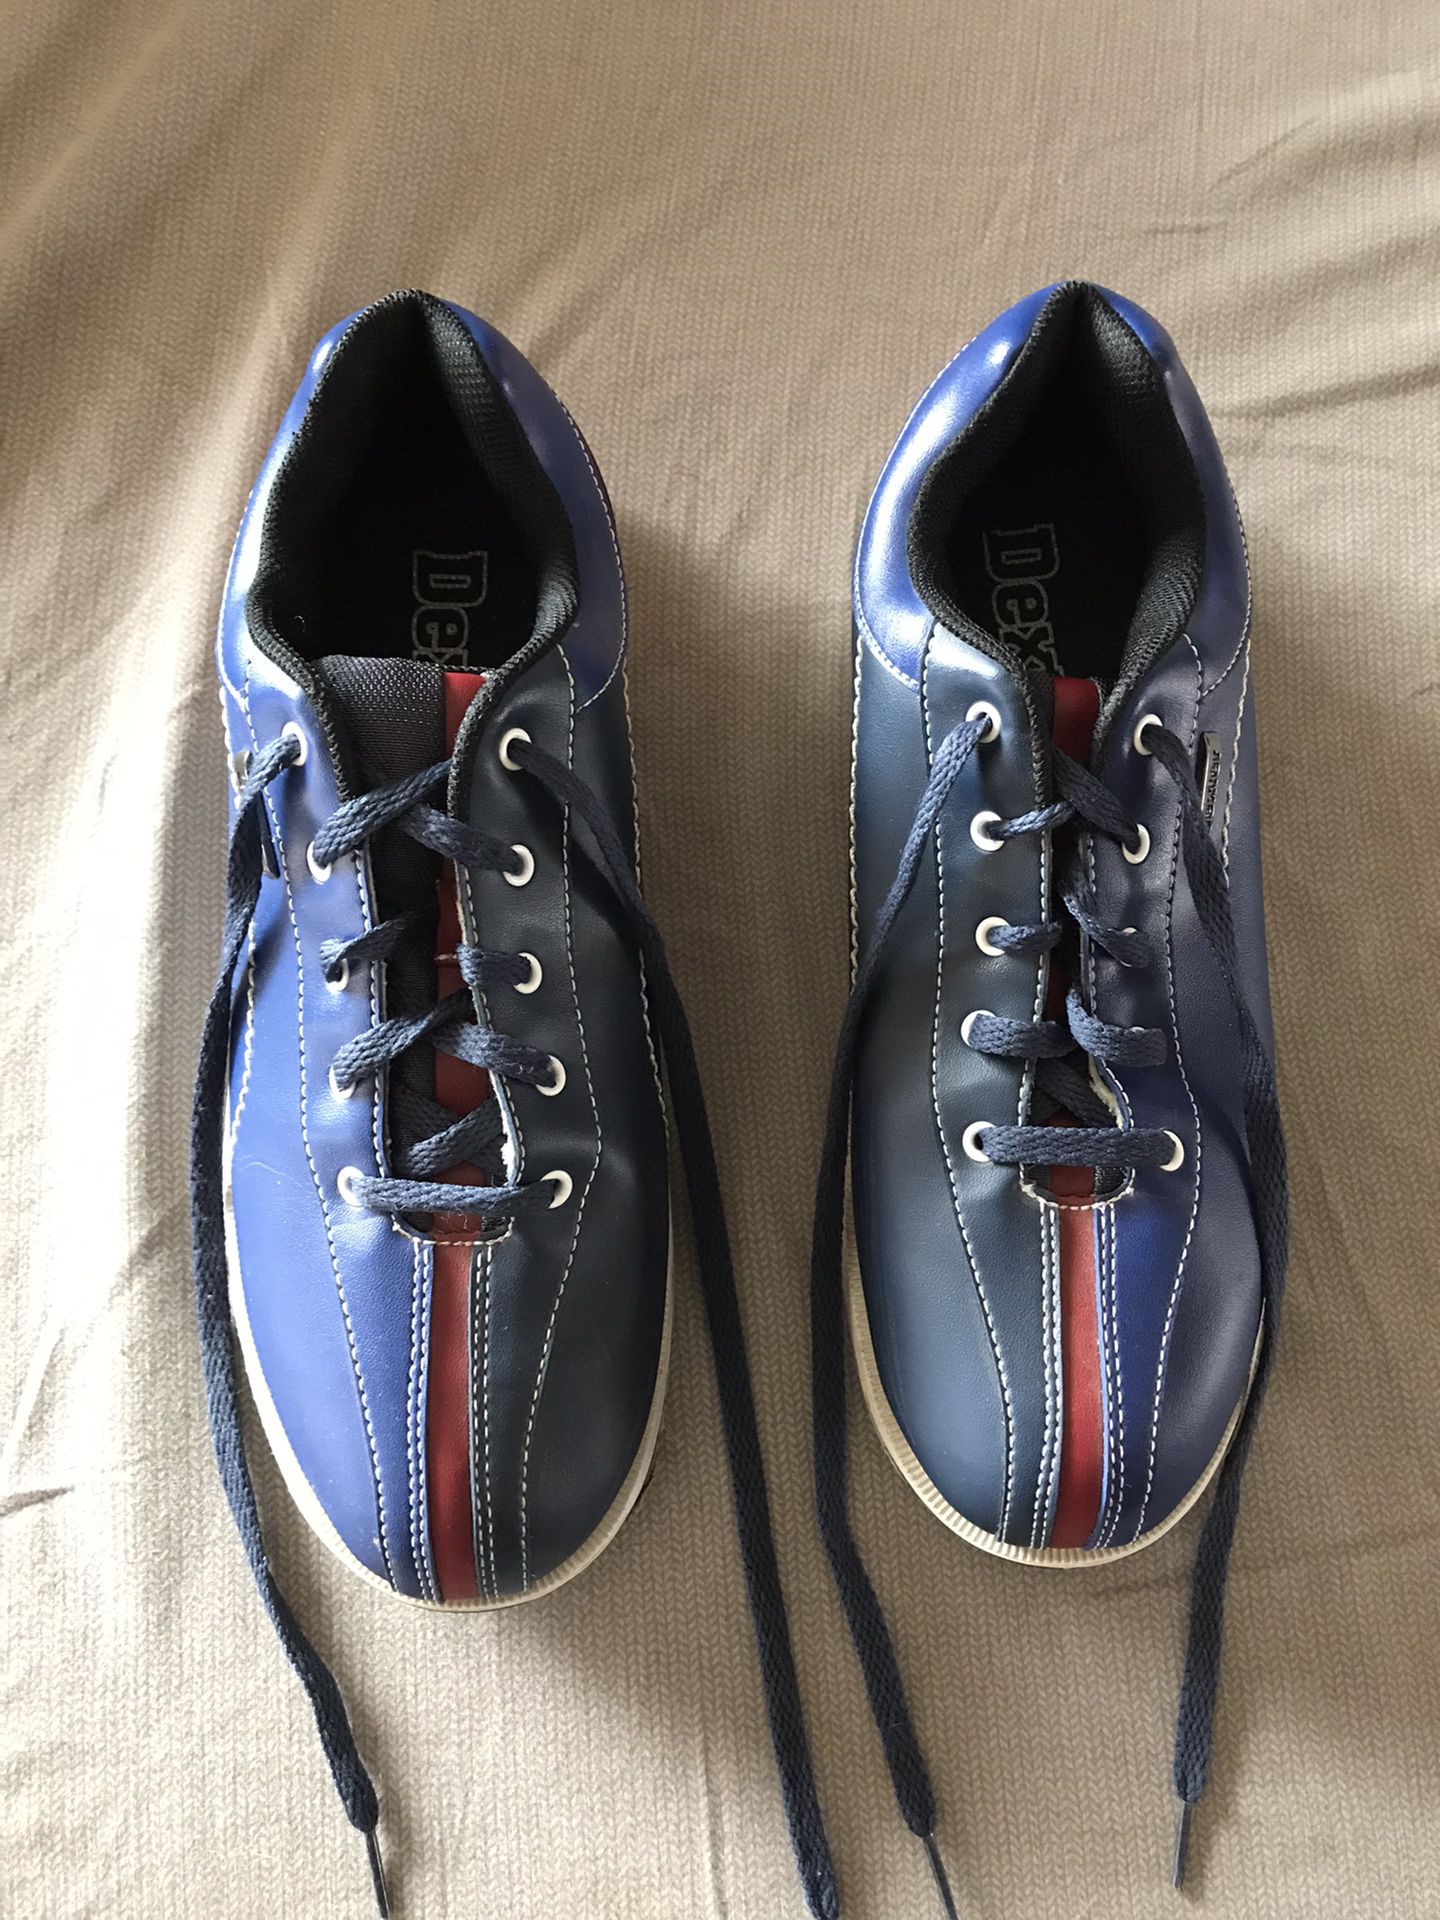 Men’s bowling shoes 10 1/2